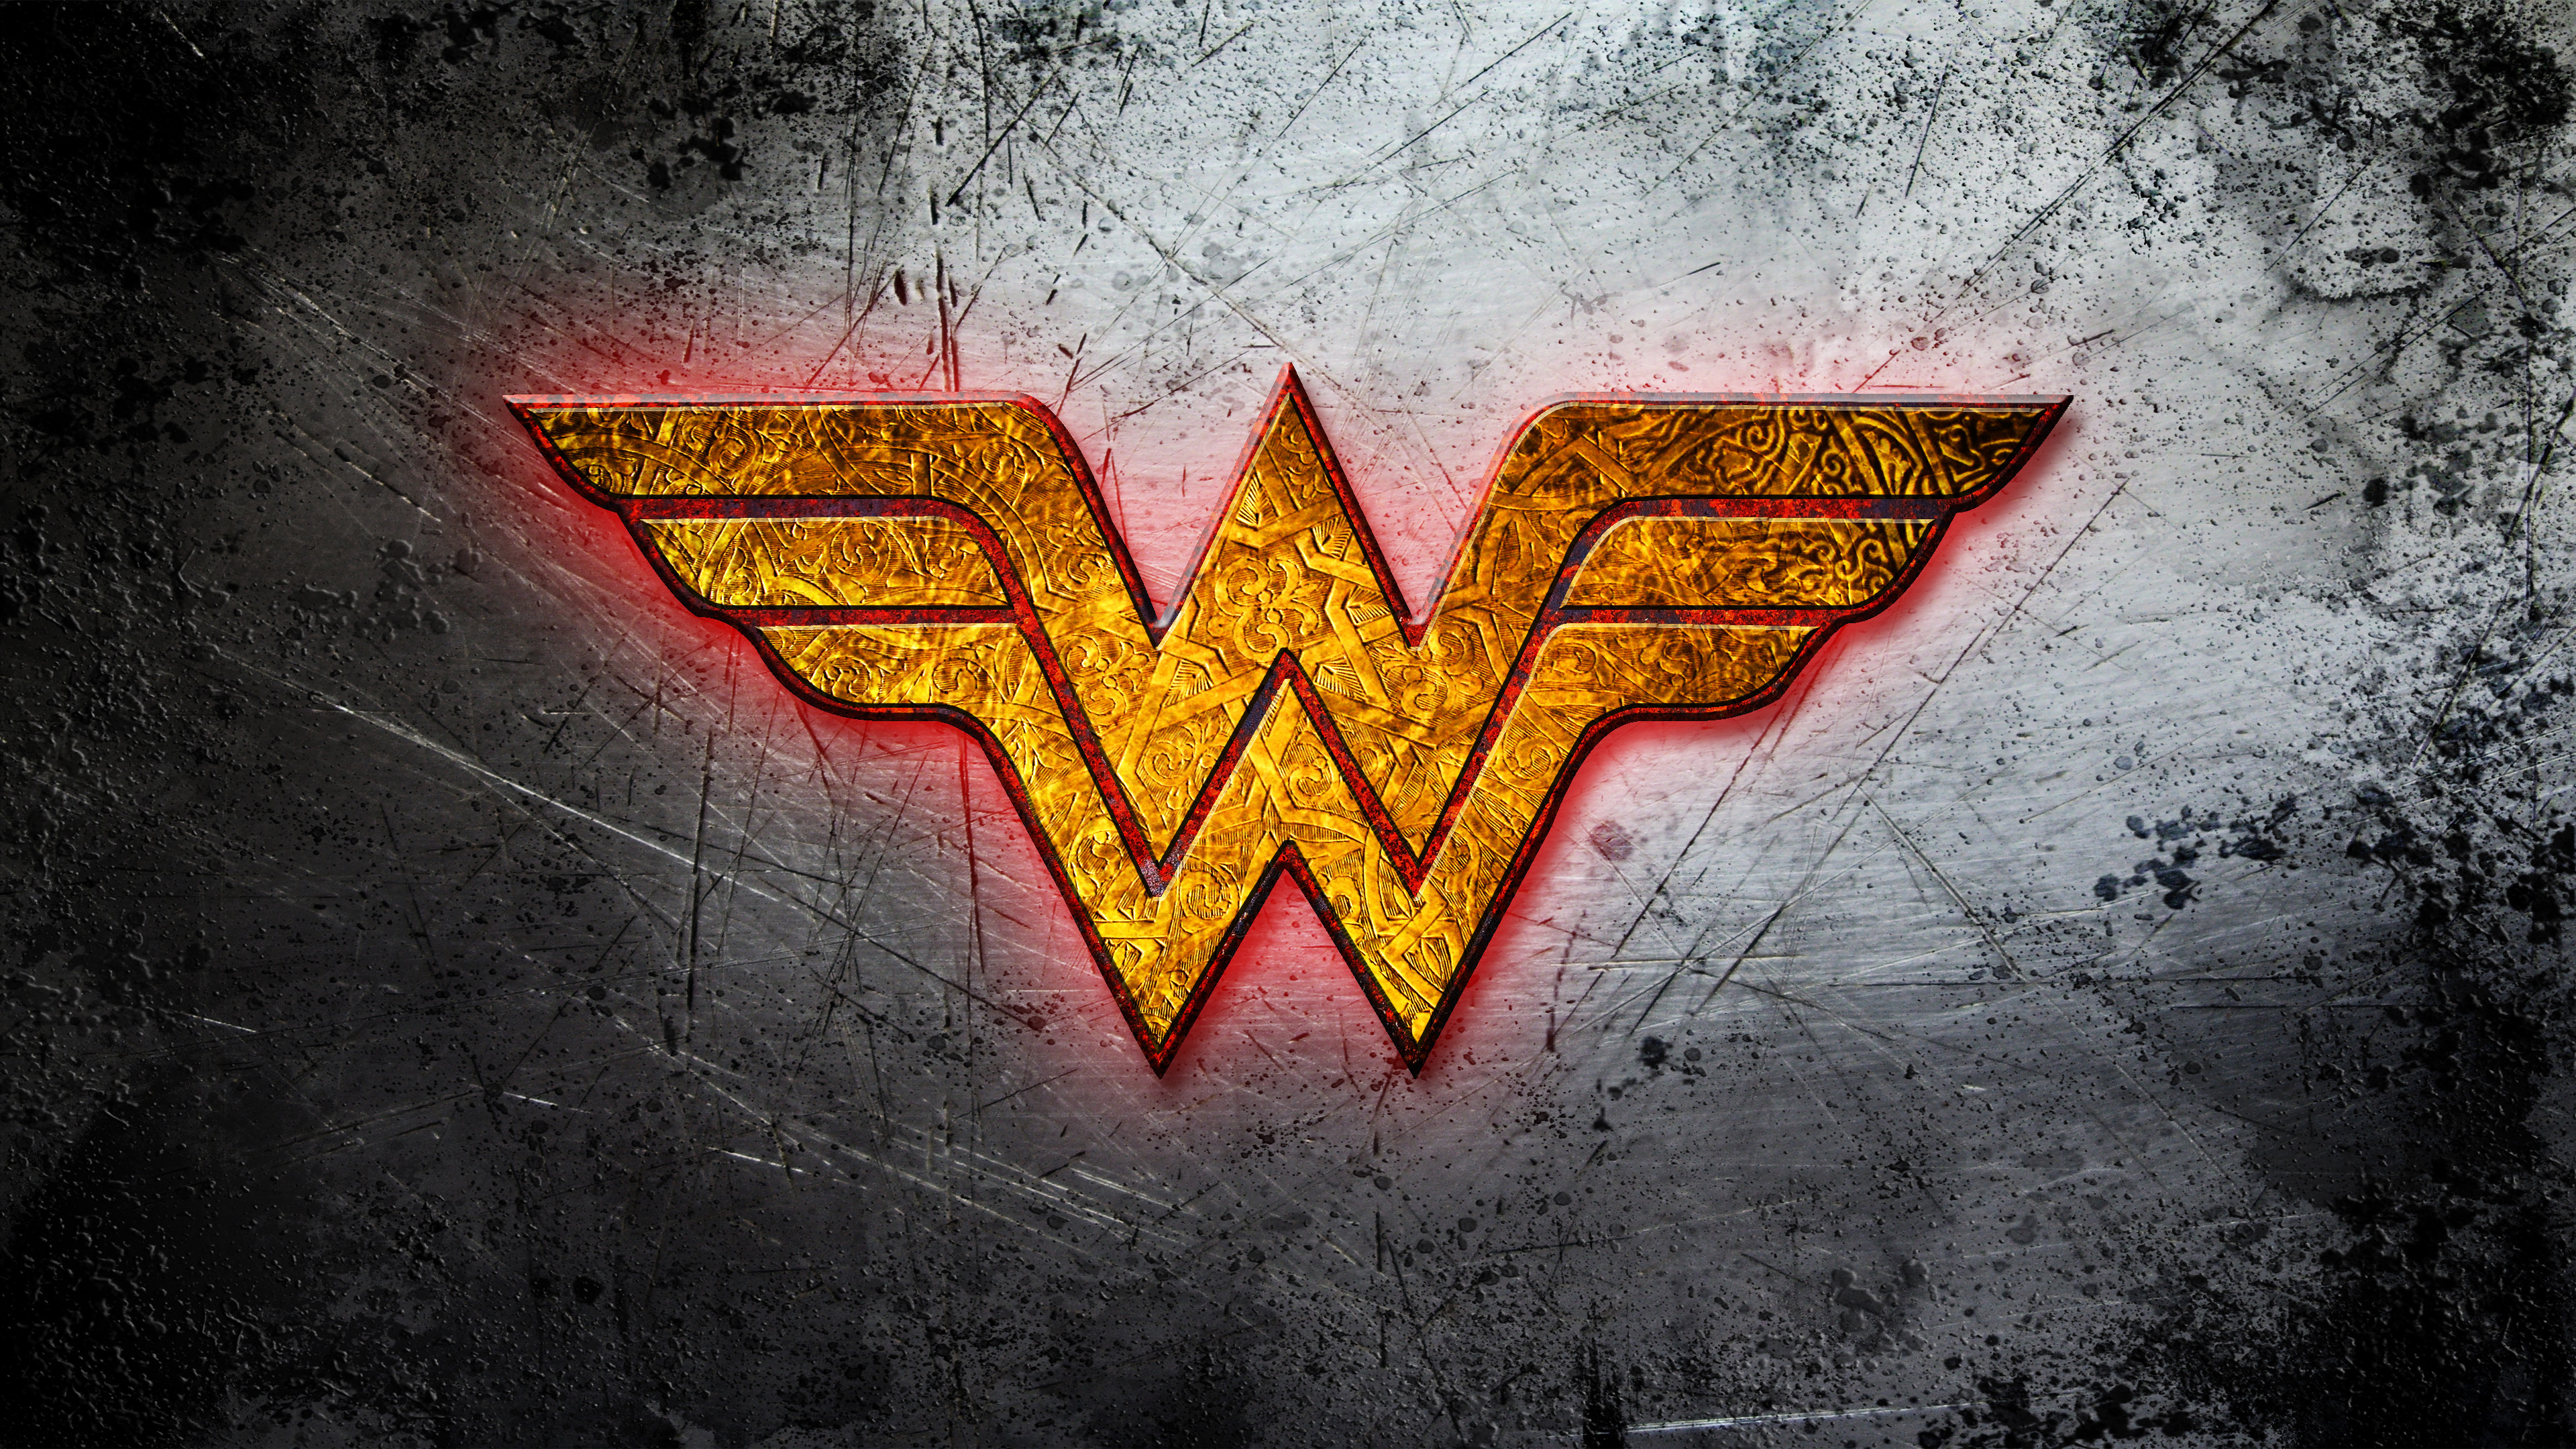 66+] Wonder Woman Wallpaper - WallpaperSafari